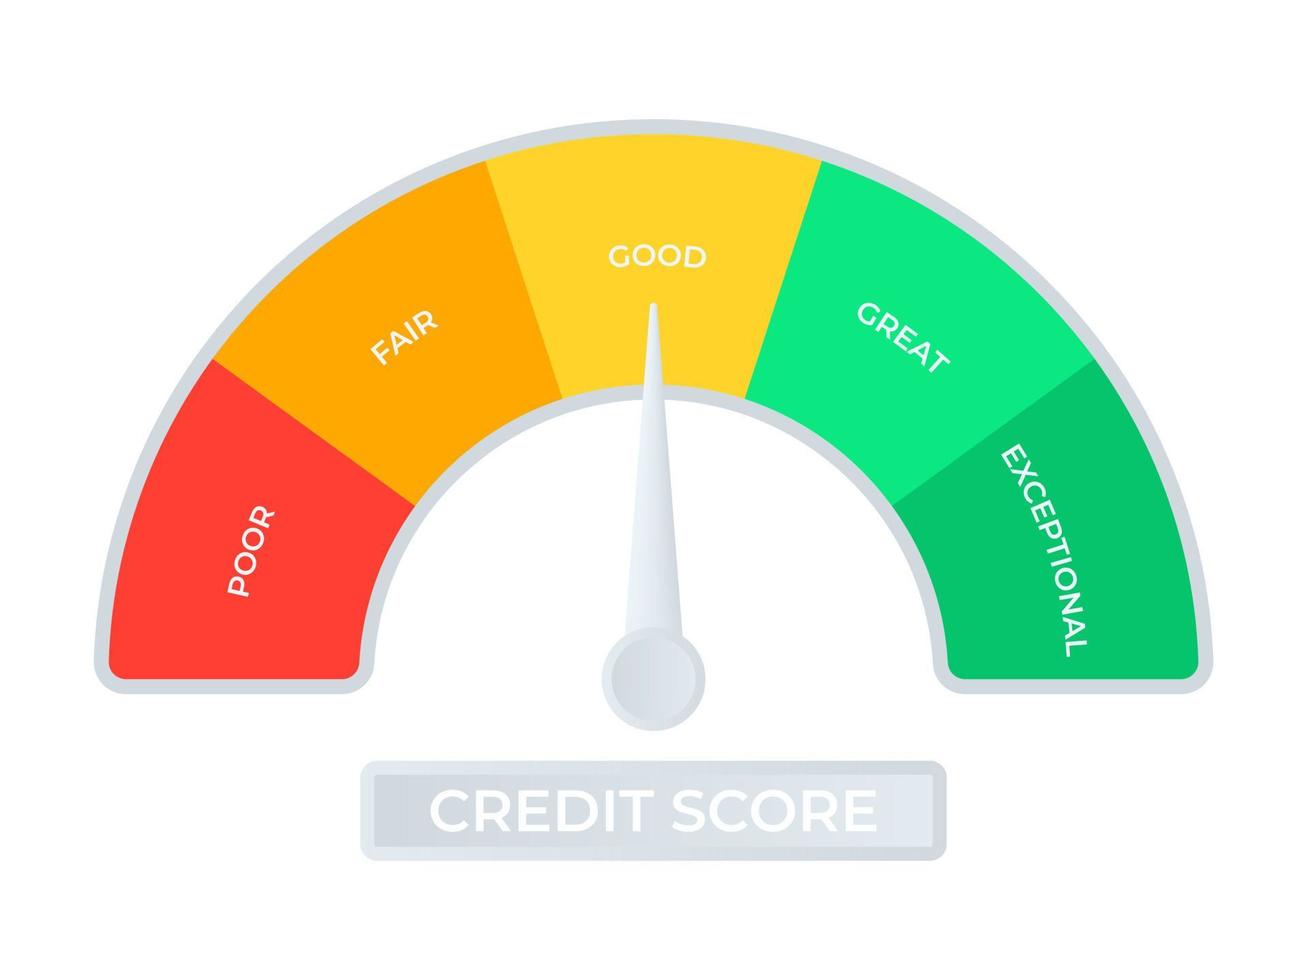 échelle de pointage de crédit. un indicateur pour mesurer les bonnes et les mauvaises cotes de crédit. illustration vectorielle. vecteur